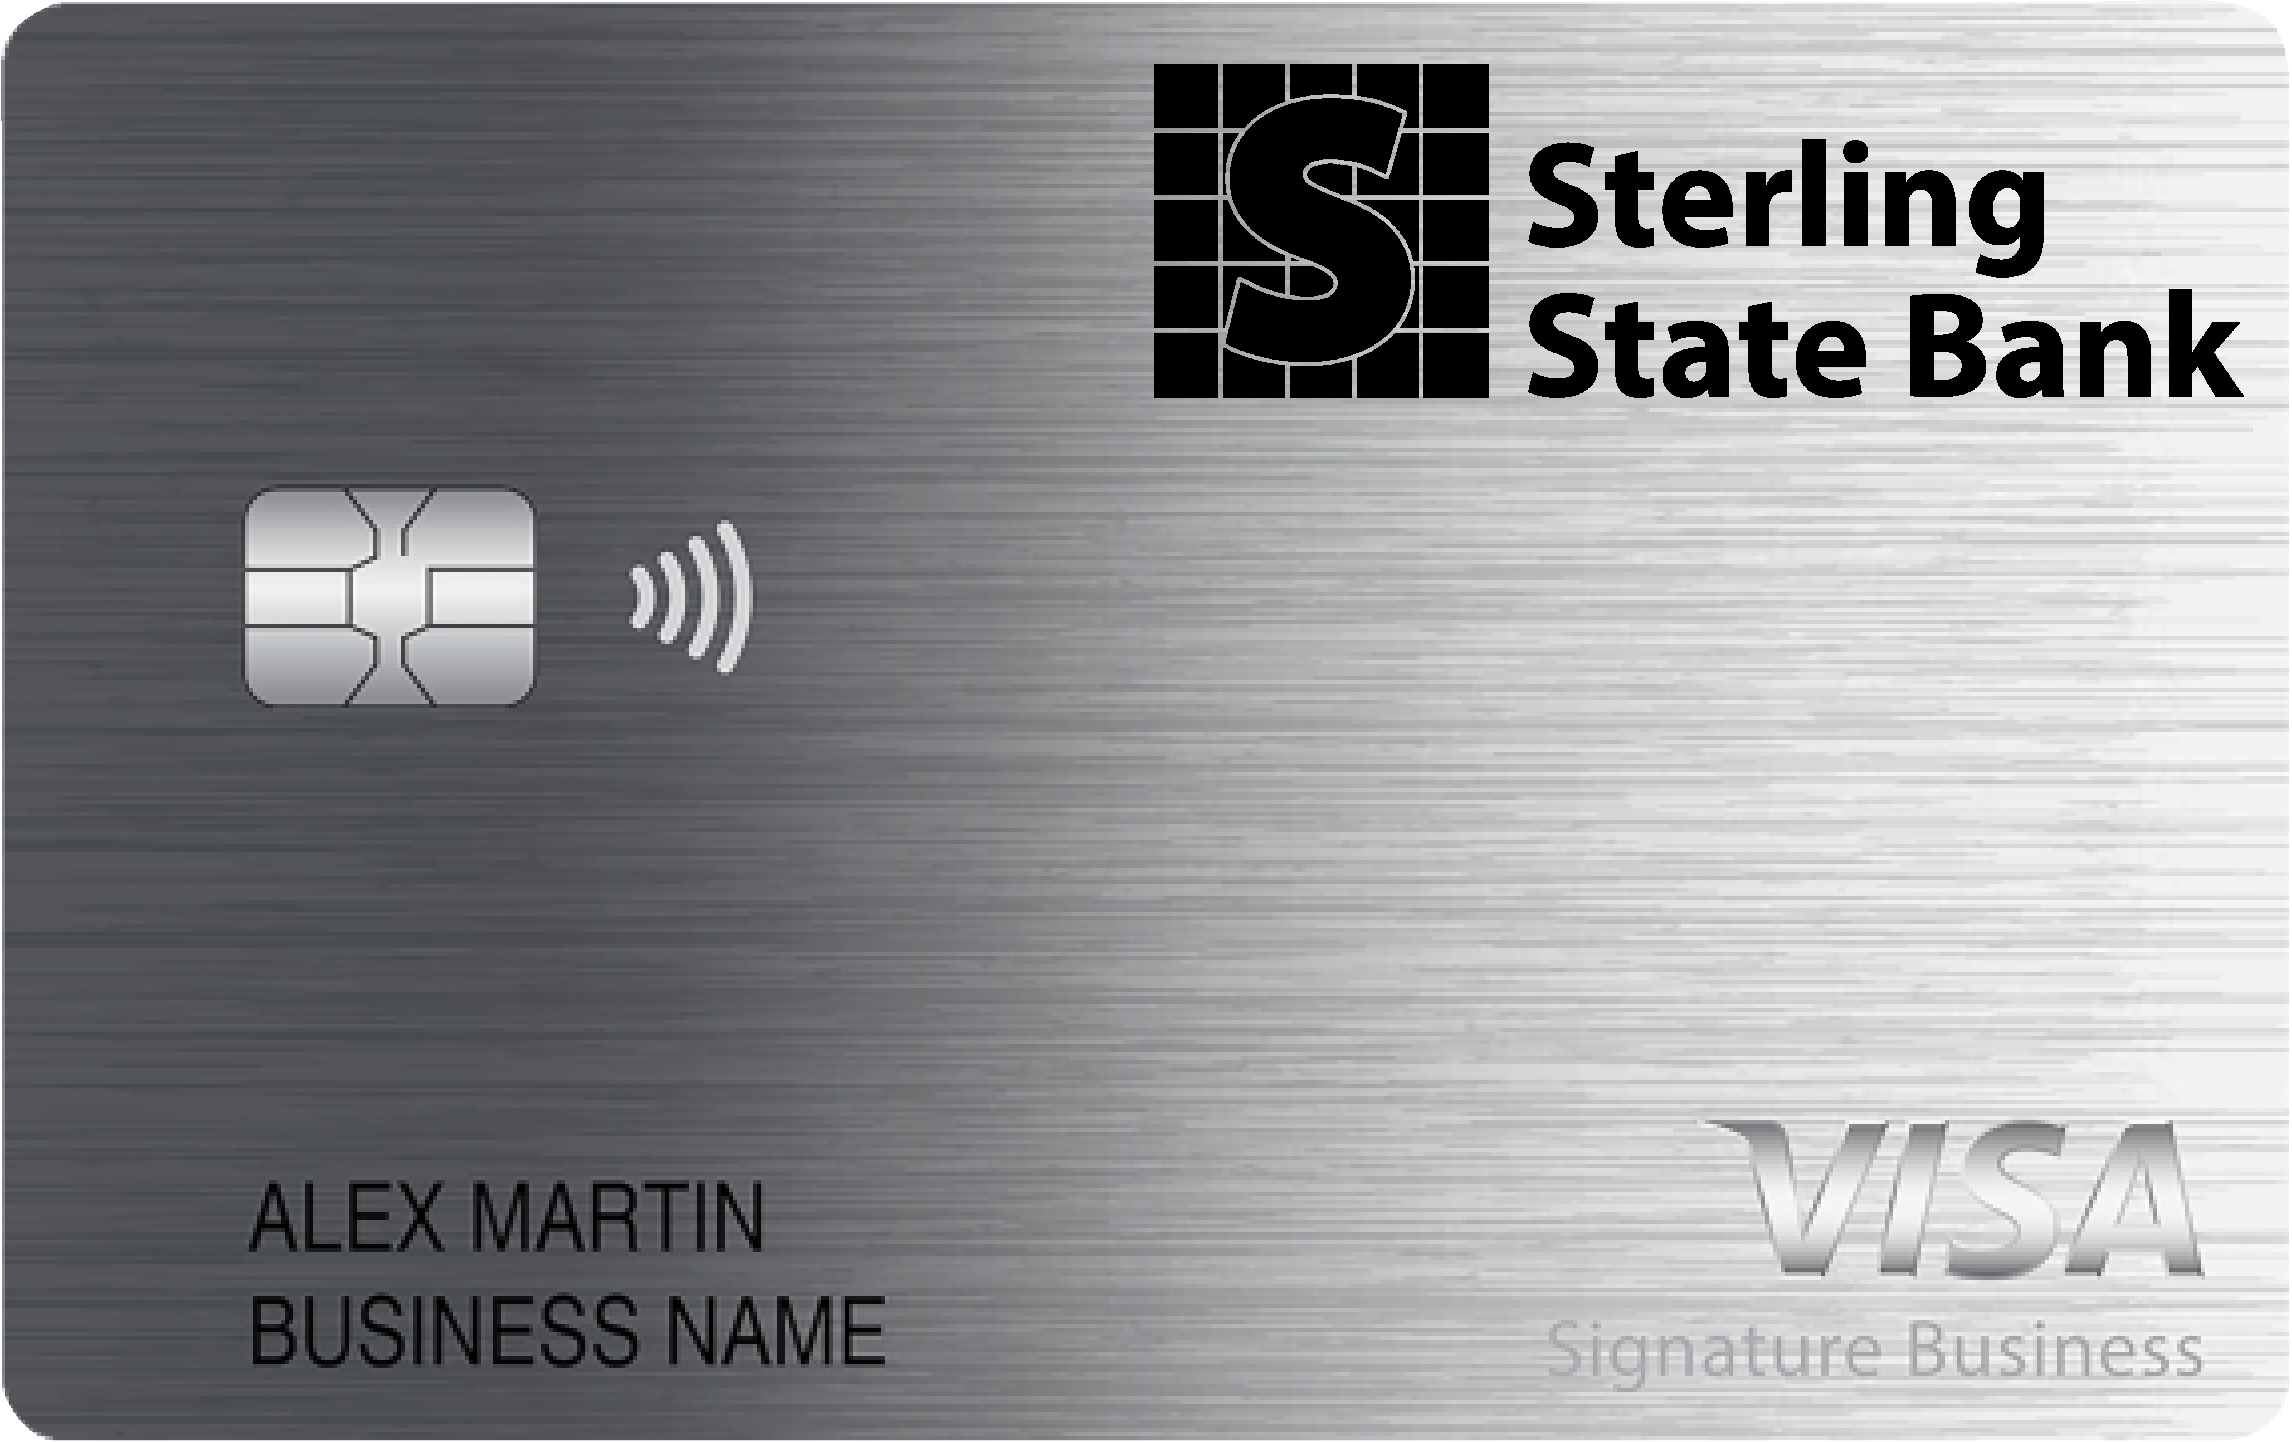 Sterling State Bank Smart Business Rewards Card